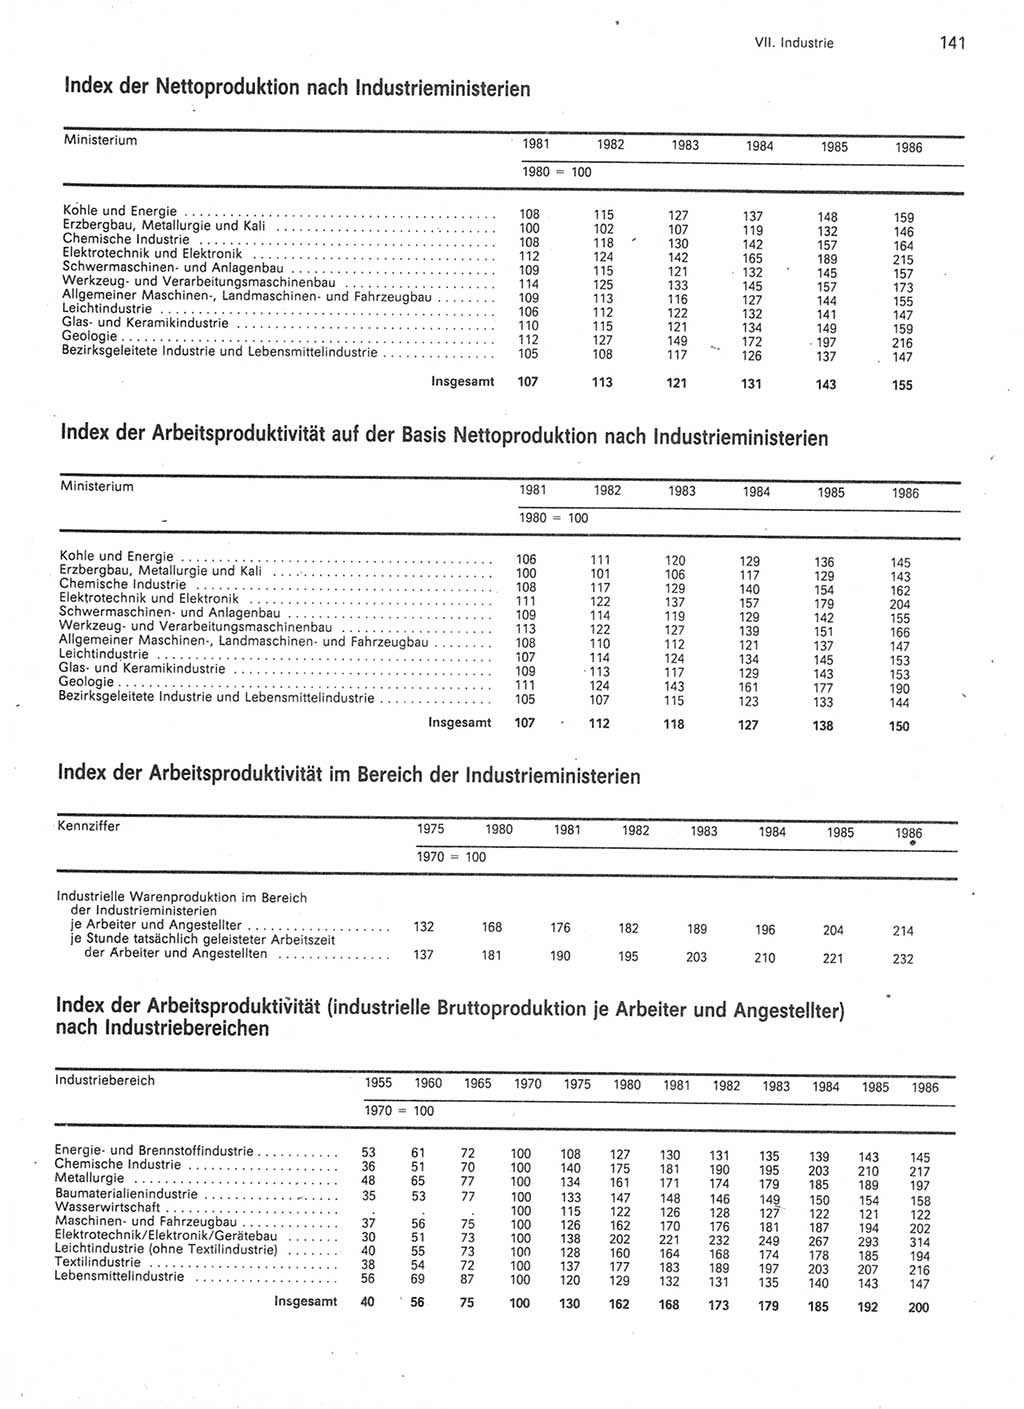 Statistisches Jahrbuch der Deutschen Demokratischen Republik (DDR) 1987, Seite 141 (Stat. Jb. DDR 1987, S. 141)